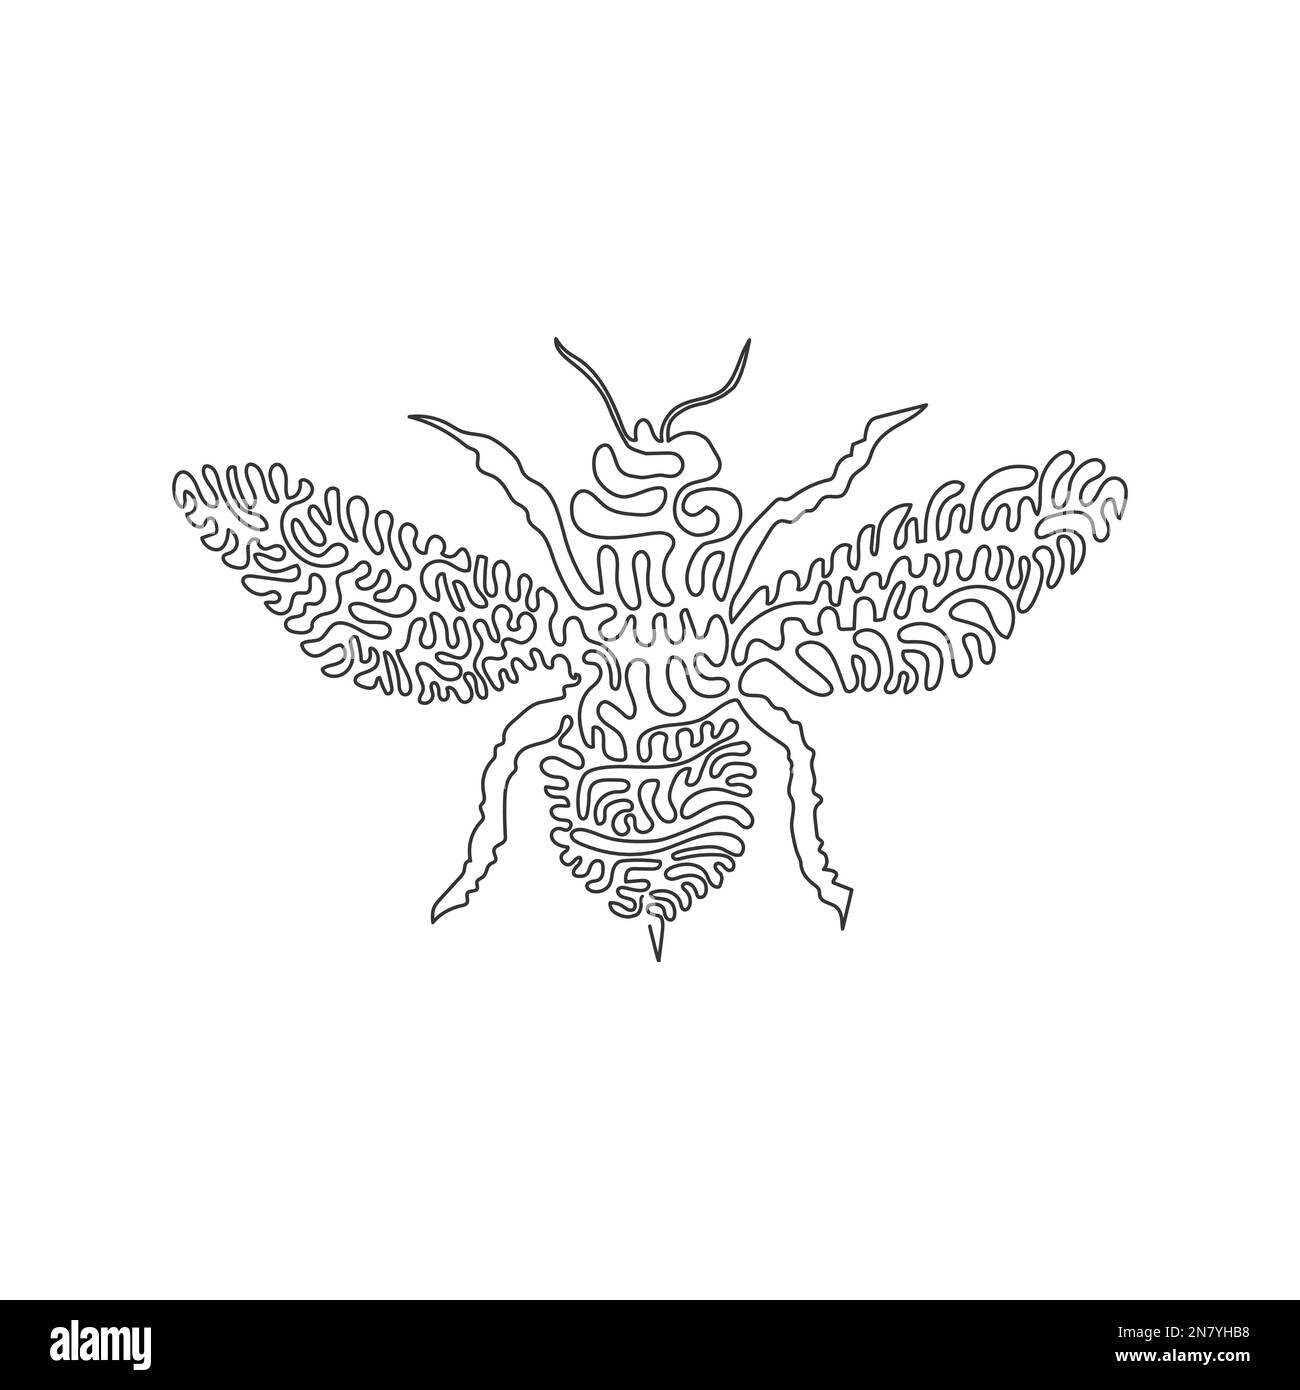 Un seul dessin d'une ligne de l'adorable abeille volant art abstrait Ligne continue dessin graphique dessin vectoriel illustration d'insectes sociaux abeille pour icône, s Illustration de Vecteur